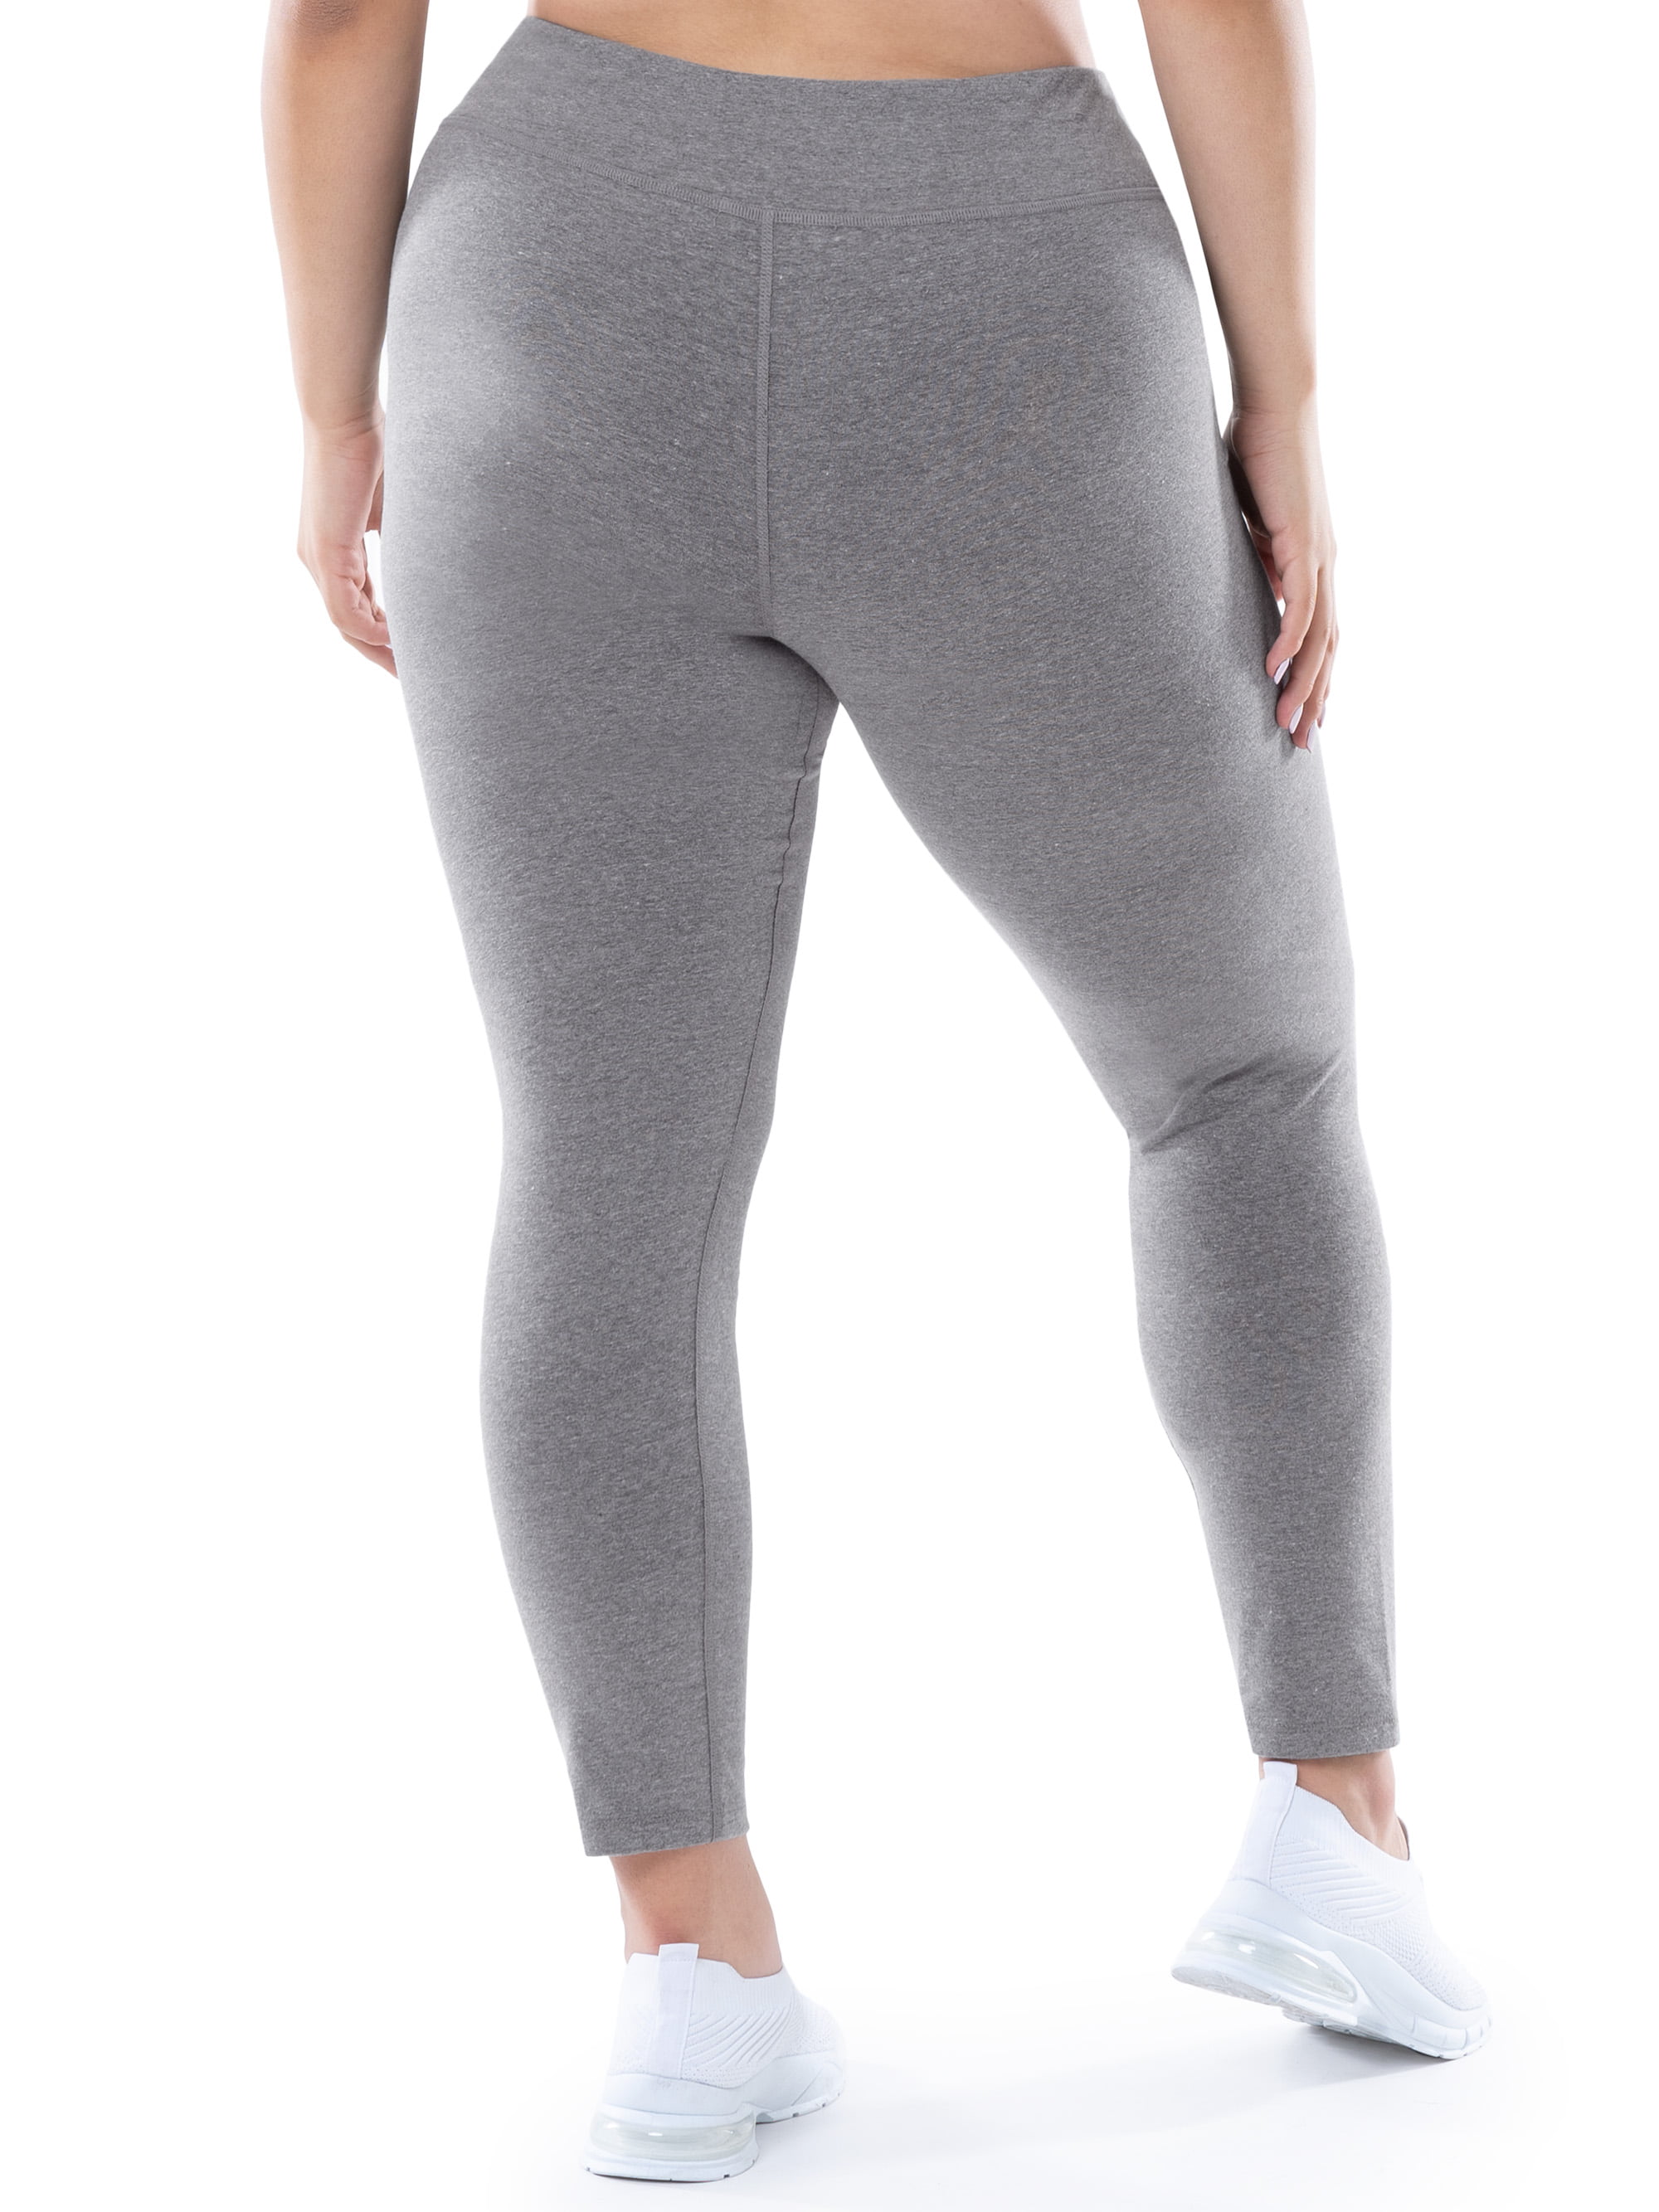 ECHT womens fitness leggings size 2XL grey stretch skinny 065452